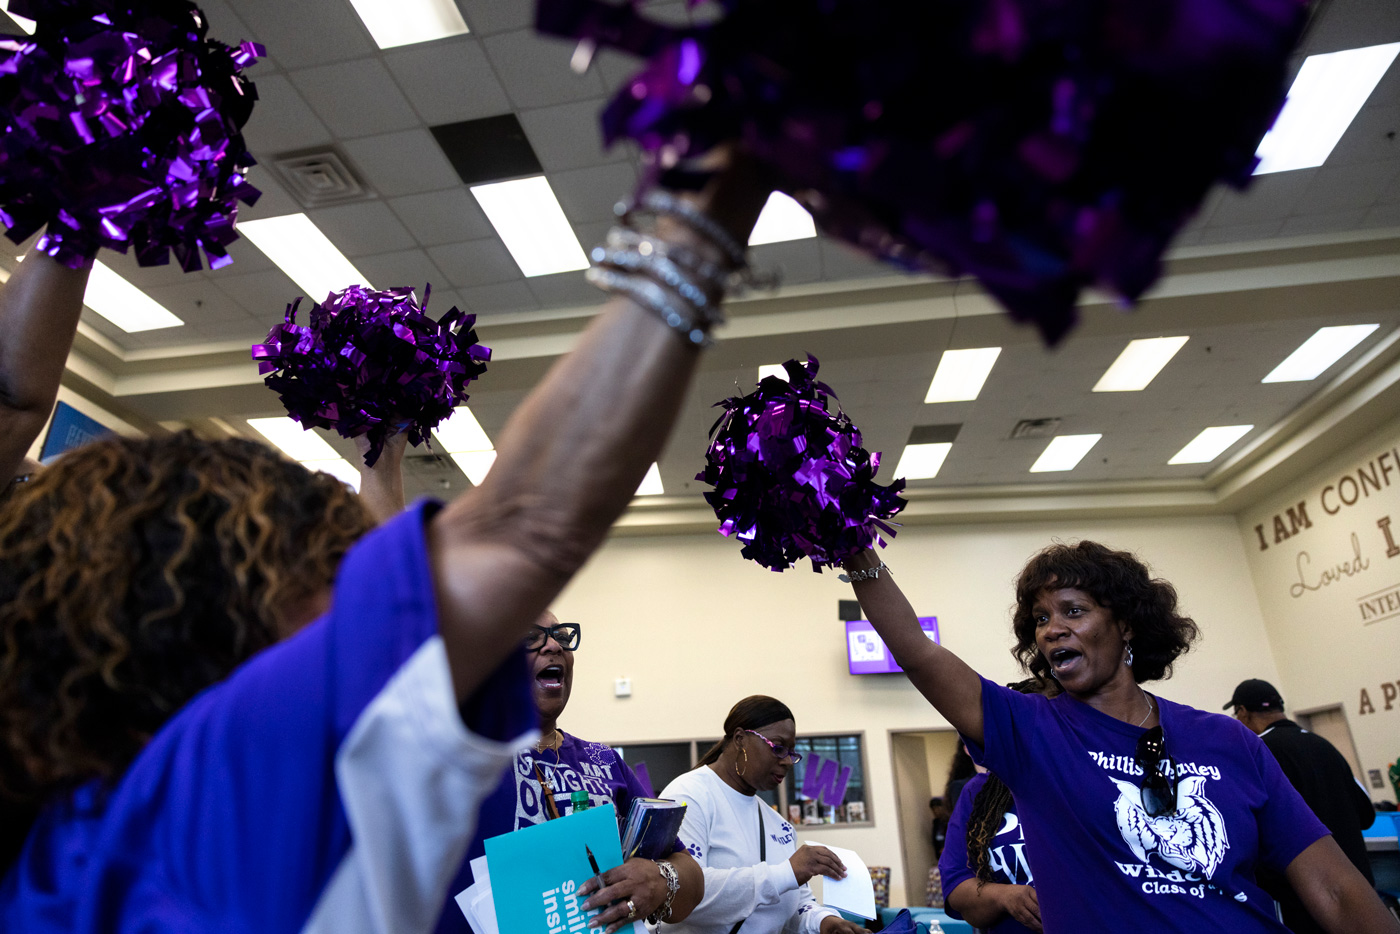 Leaders cheer in favor of Houston school as TEA takeover looms.